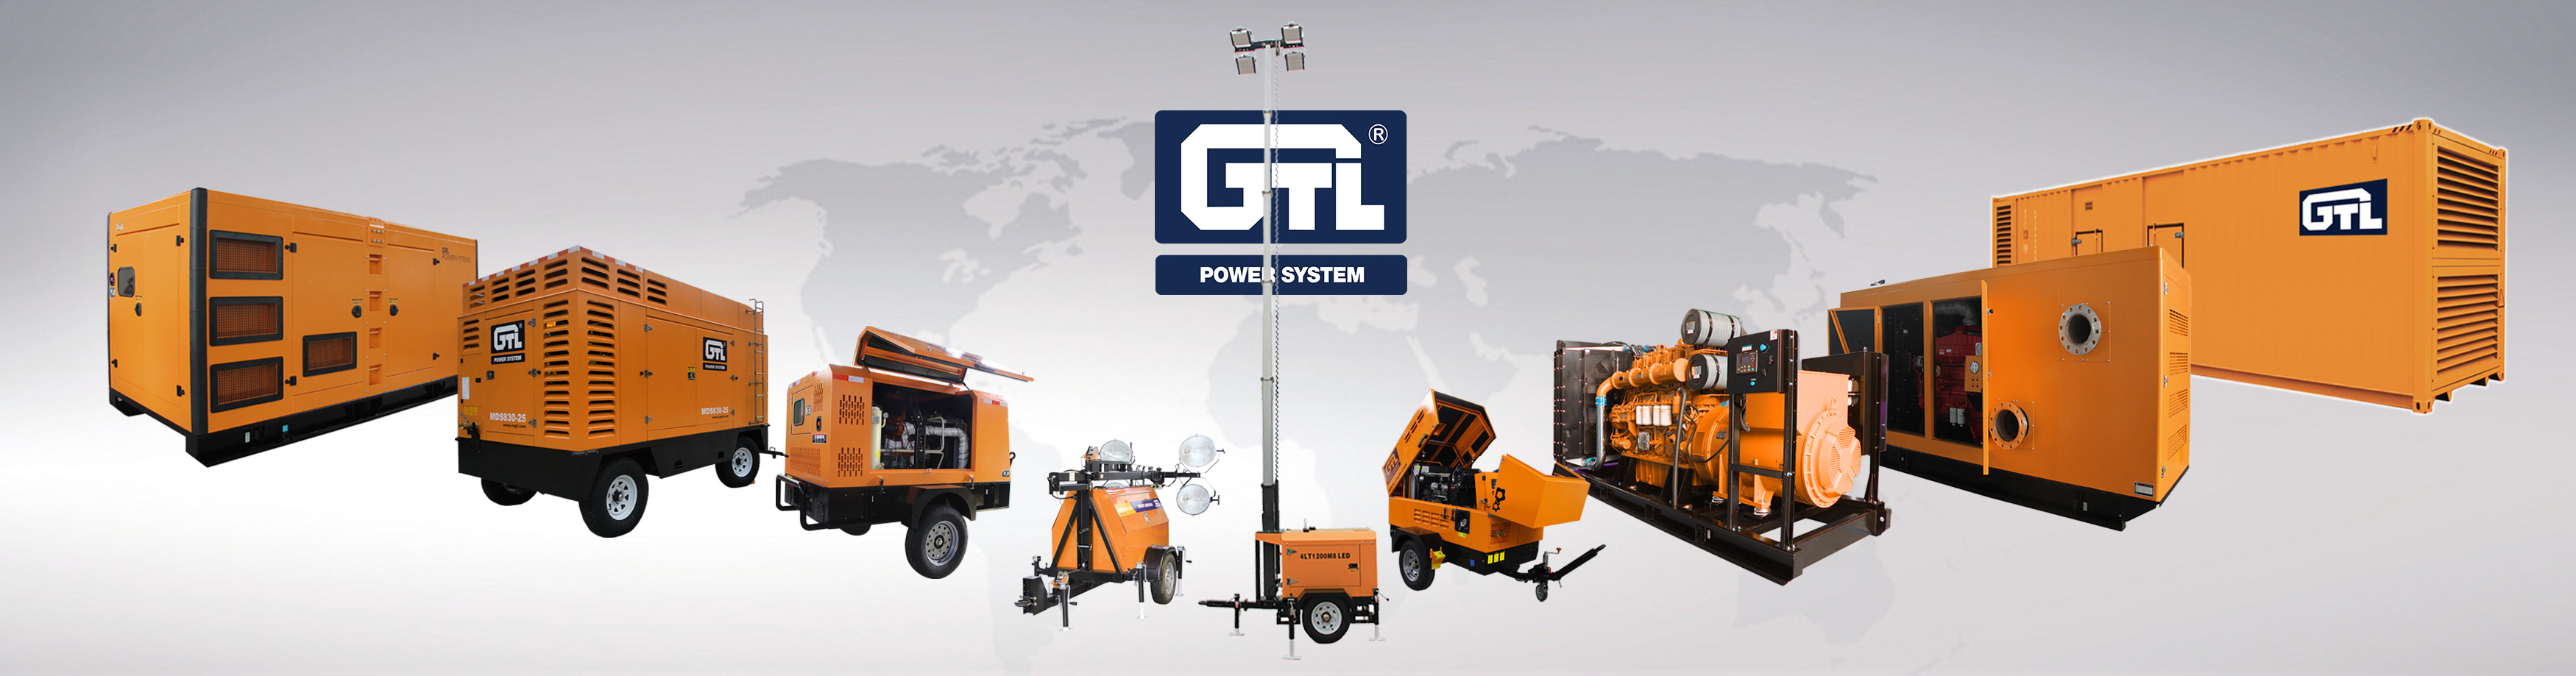 GTL Diesel generator